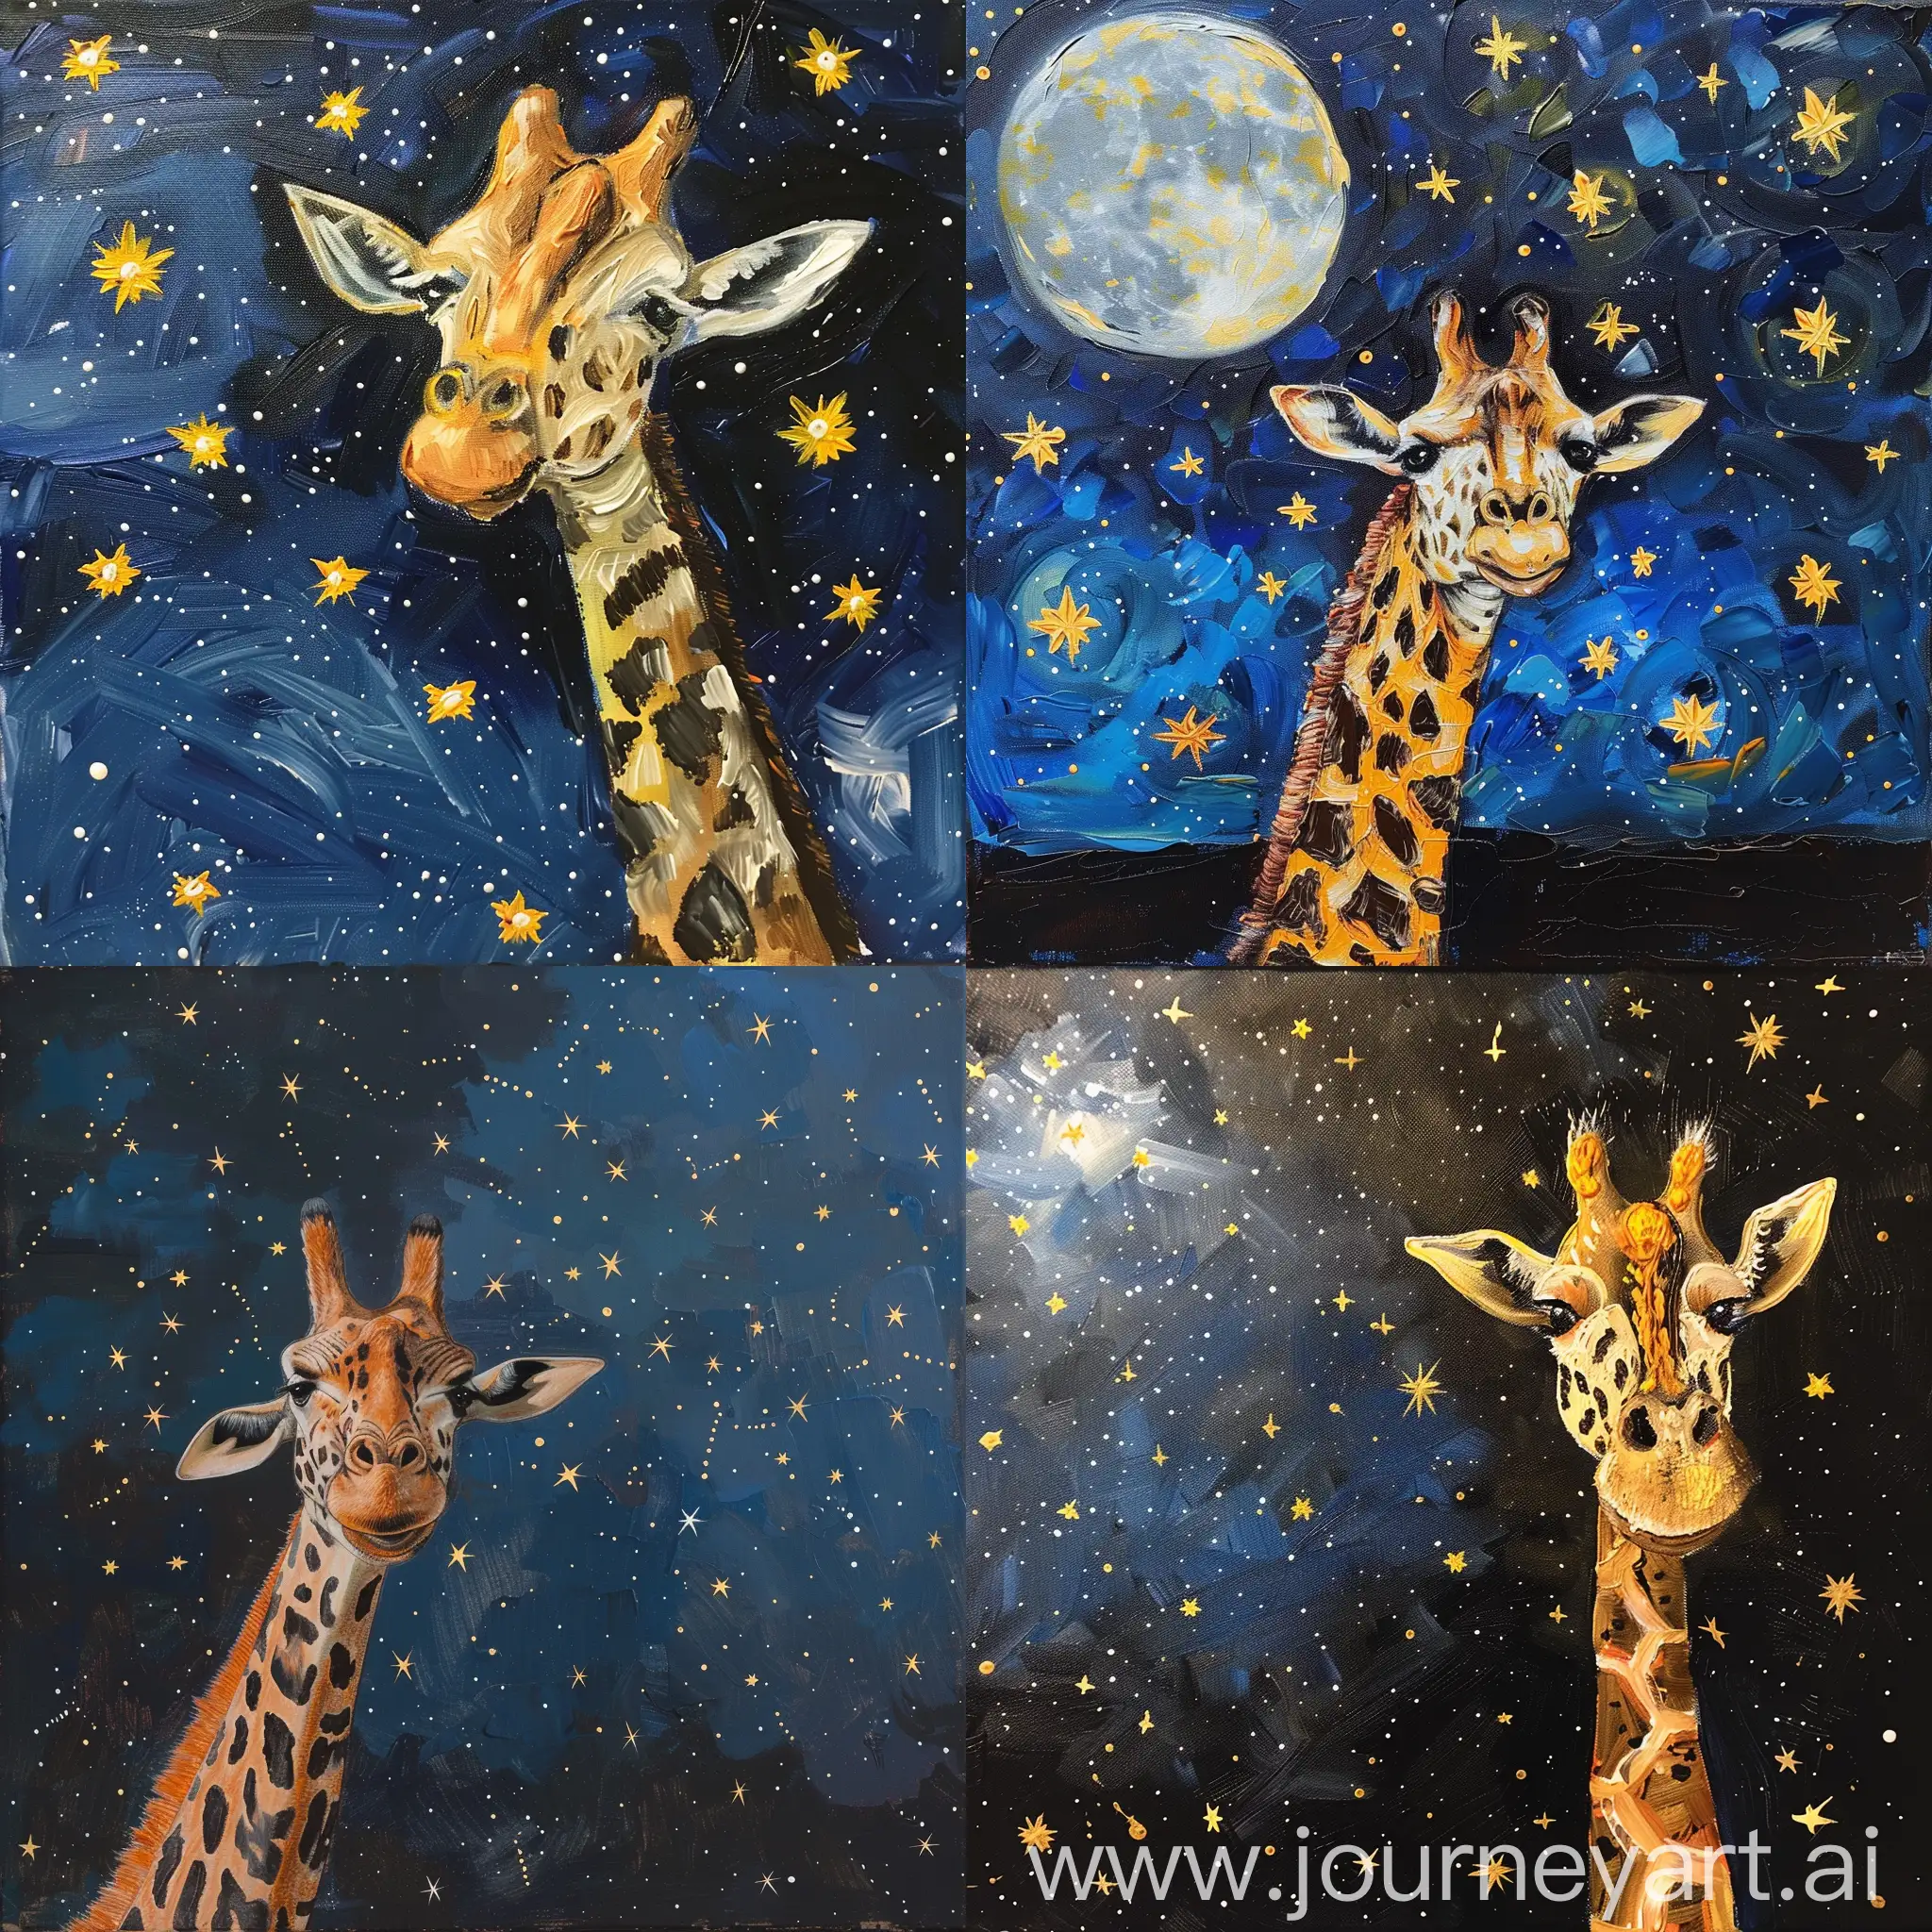 Giraffe-Painting-Stars-in-Night-Sky